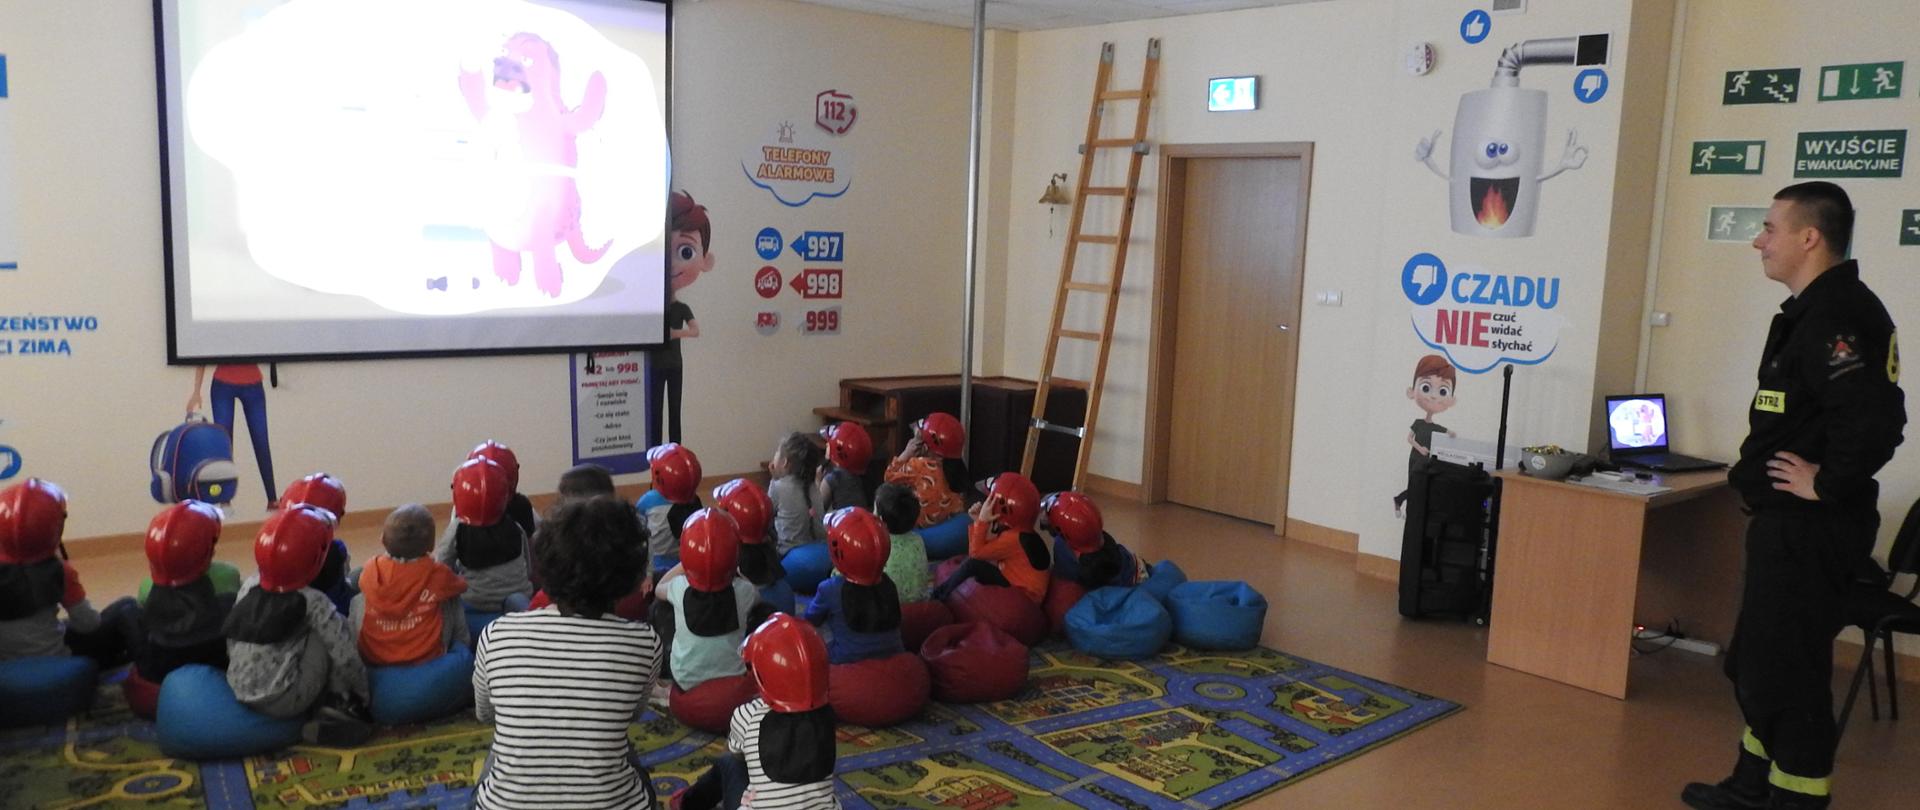 Dzieci siedzą na kolorowym dywanie. Oglądają film. Na głowach mają czerwone hełmy. Za nimi obok biurka stoi strażak. Strażak też ogląda film. 